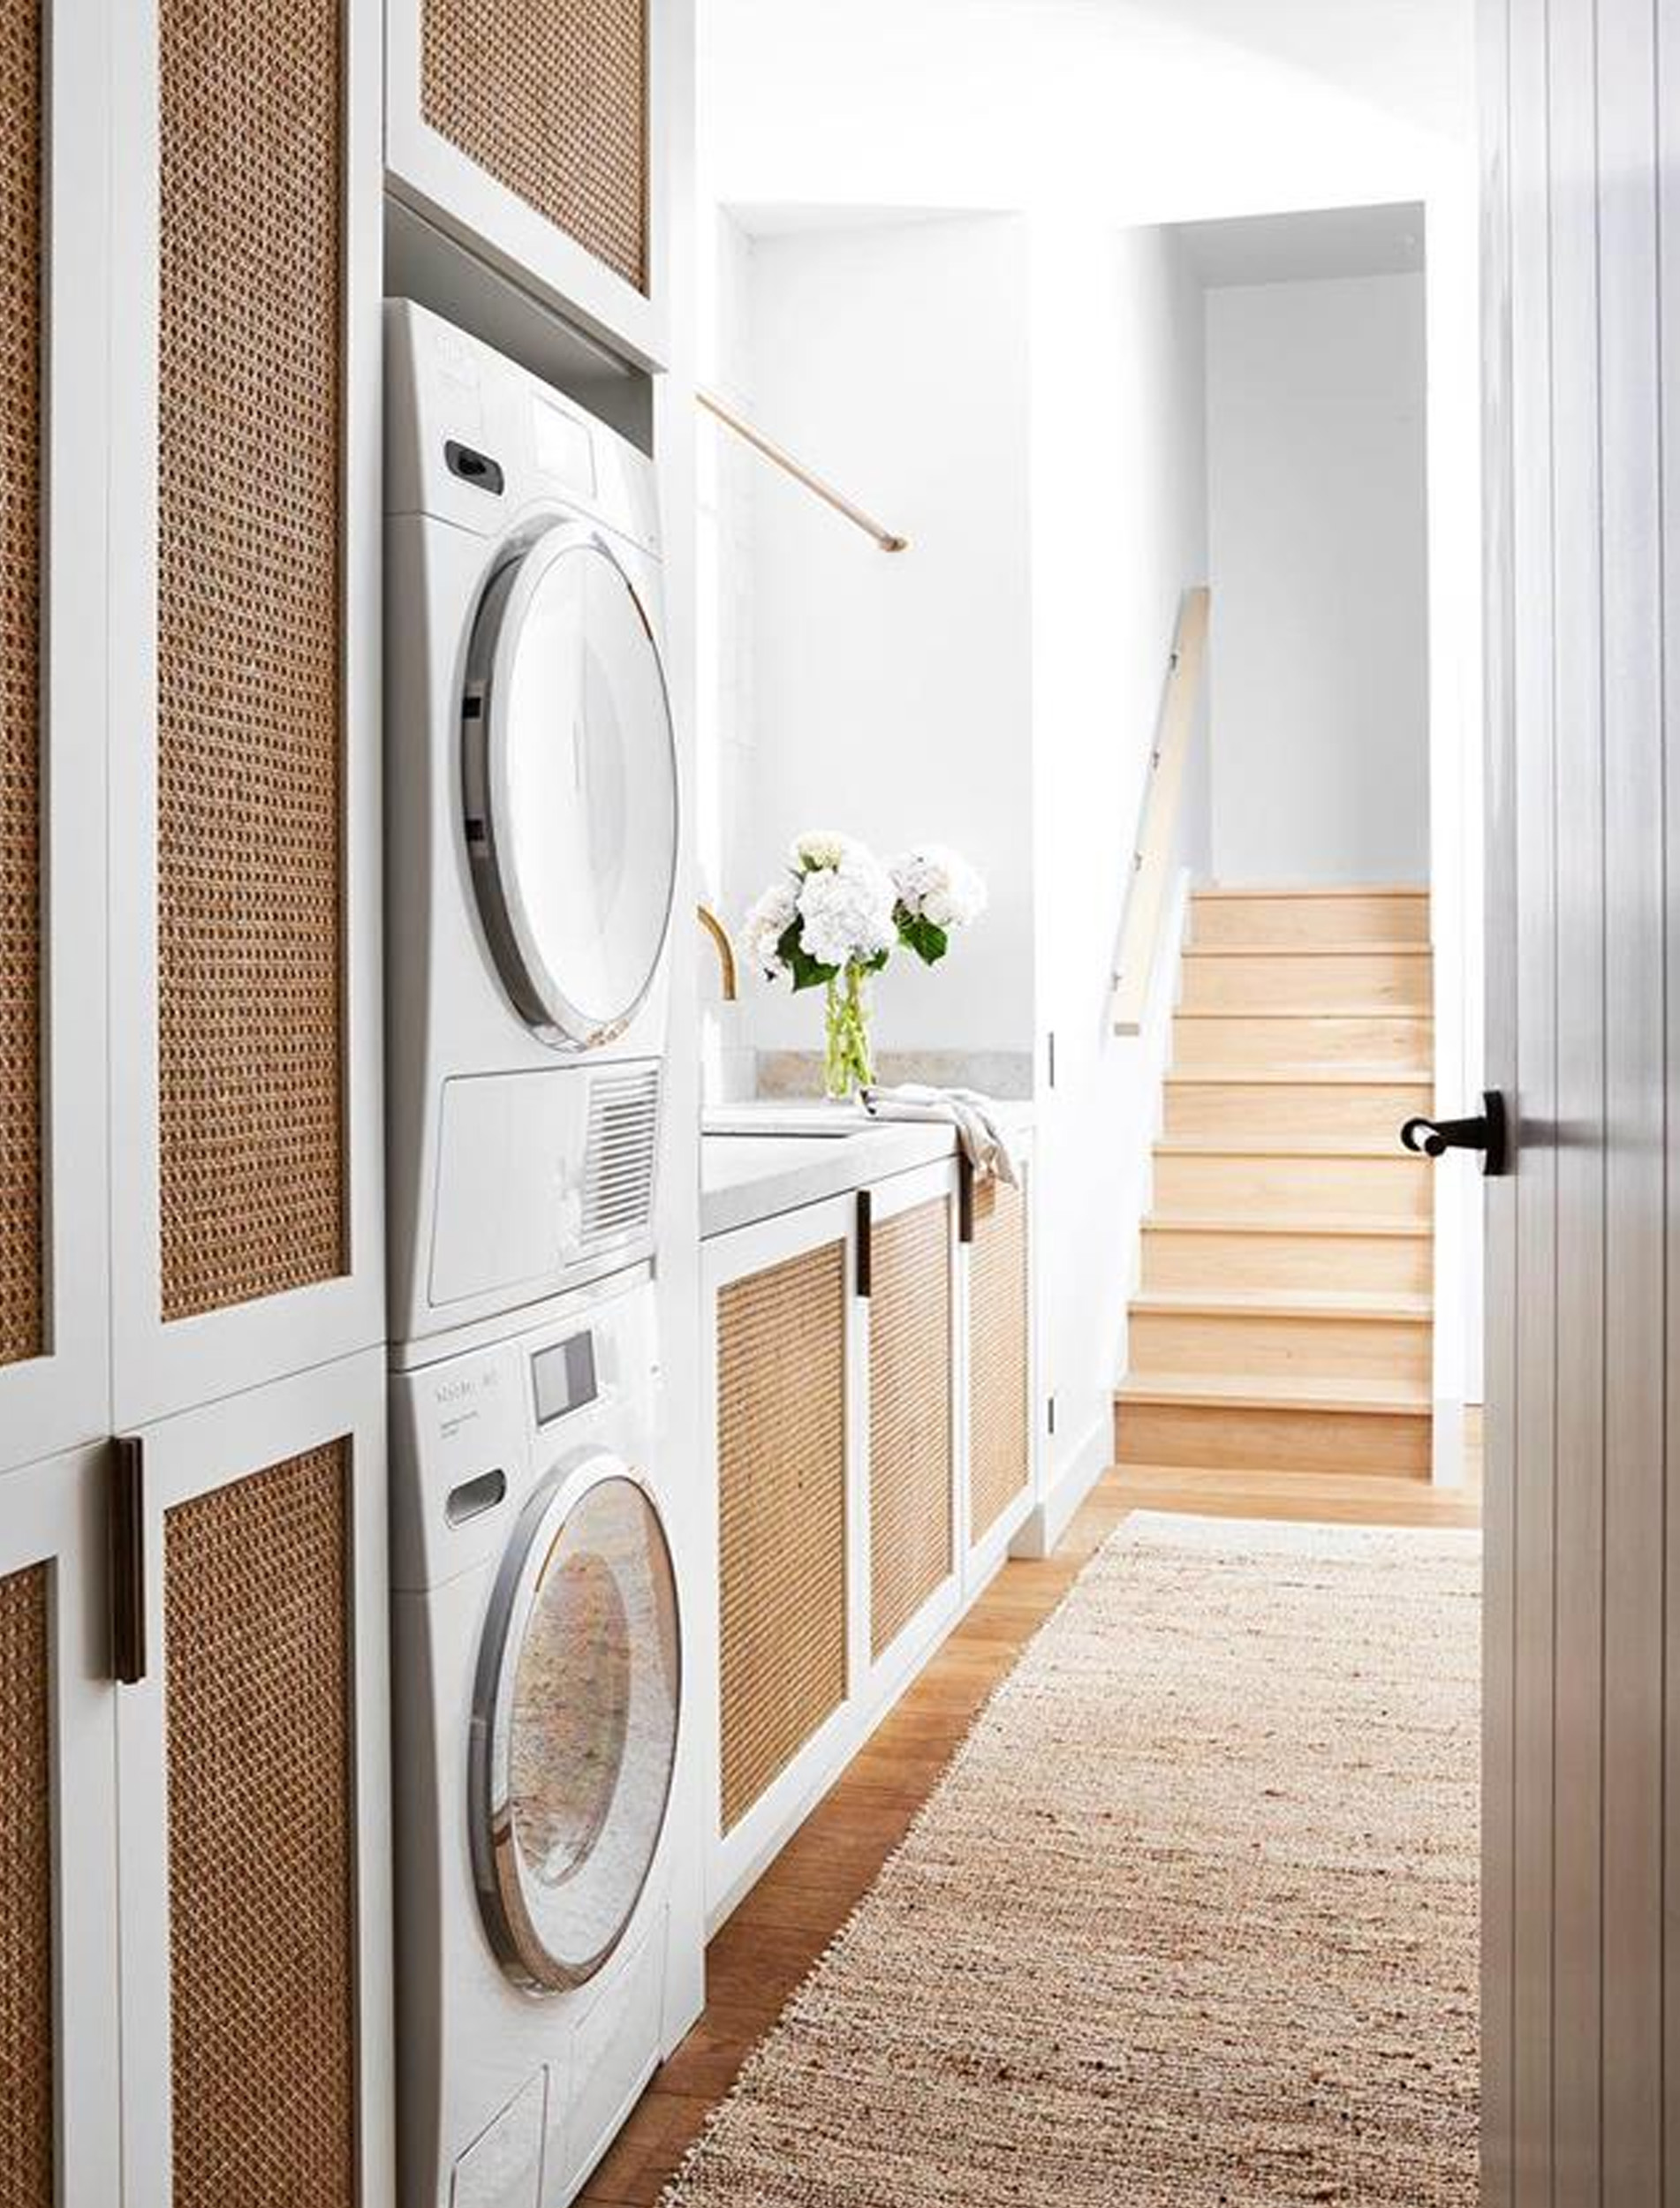 Biến hóa phòng giặt tại nhà vừa ấn tượng vừa tiện lợi chỉ với 5 cách cực kỳ đơn giản - Ảnh 9.